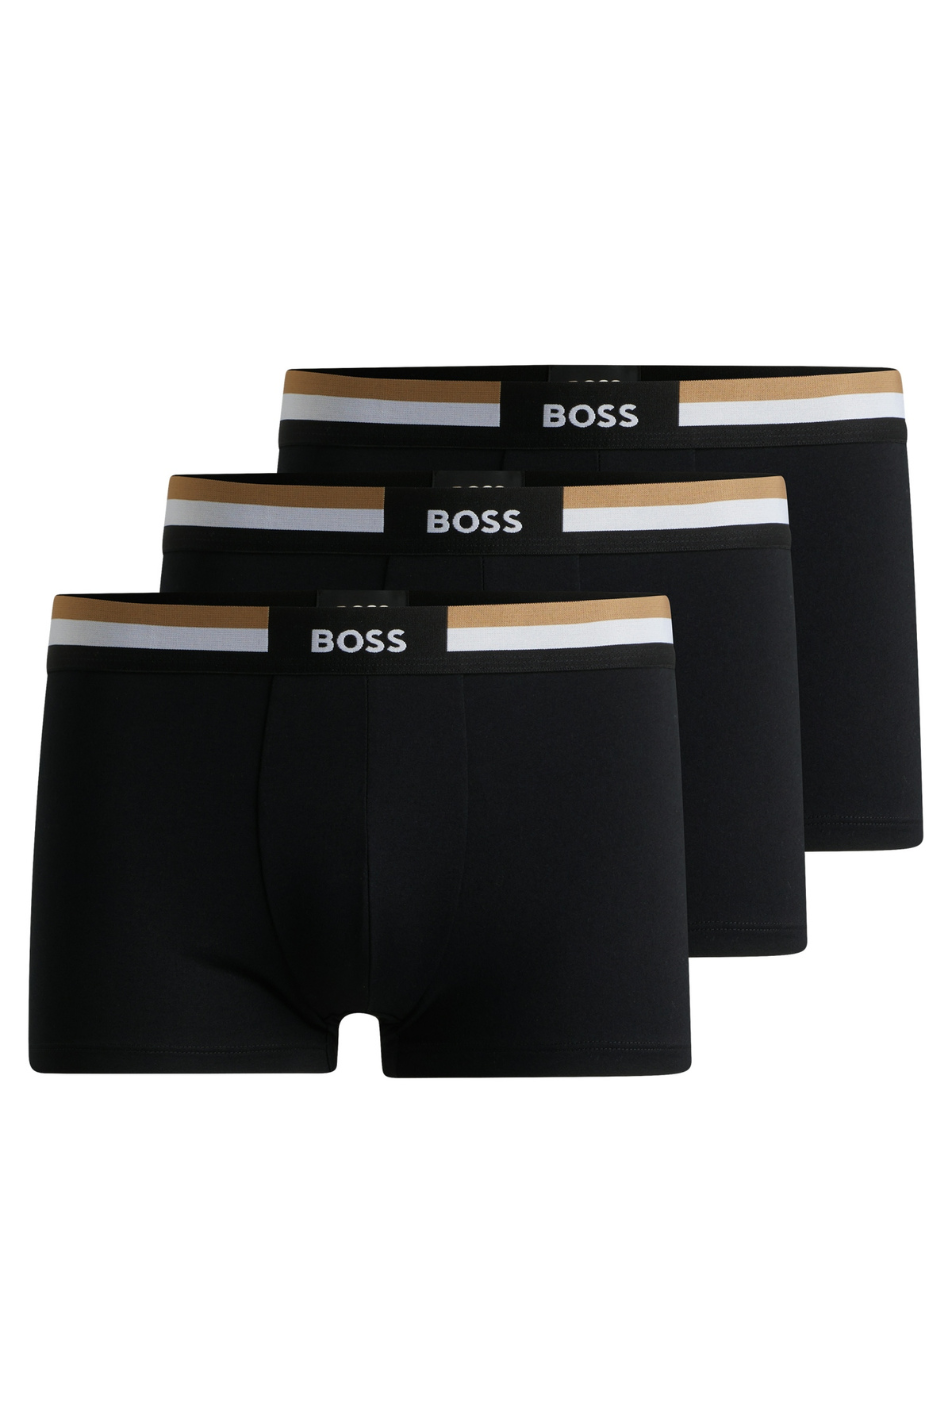 Boss 3 Pack Men's Motion Trunk